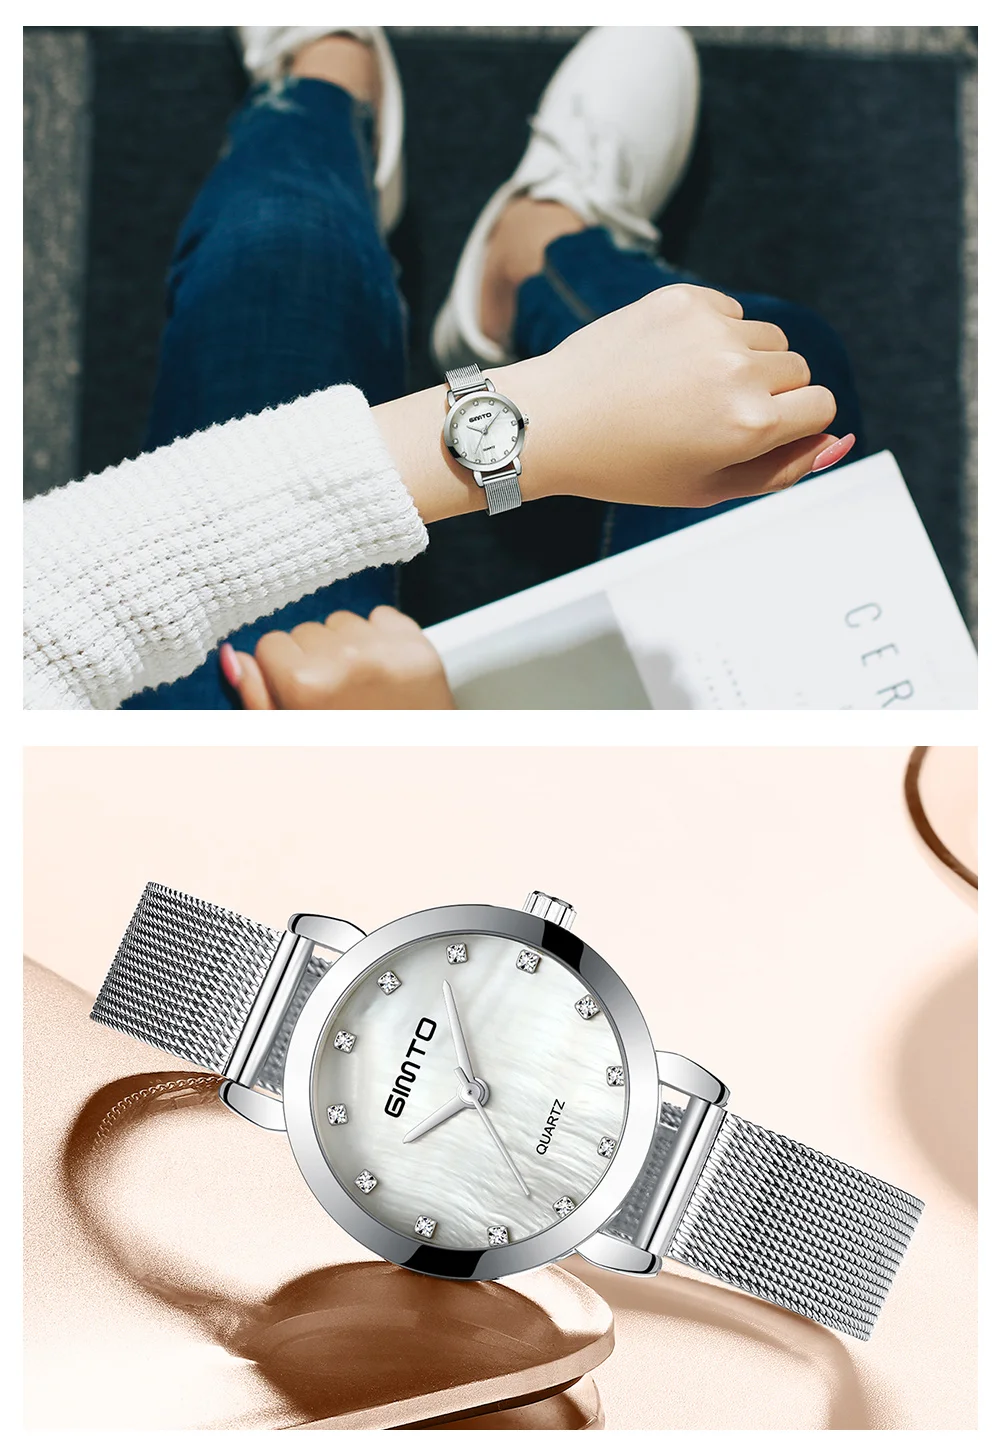 GIMTO женские часы Топ бренд роскошный браслет кварцевые женские часы золото Сталь платье женские наручные часы Часы relogio feminino